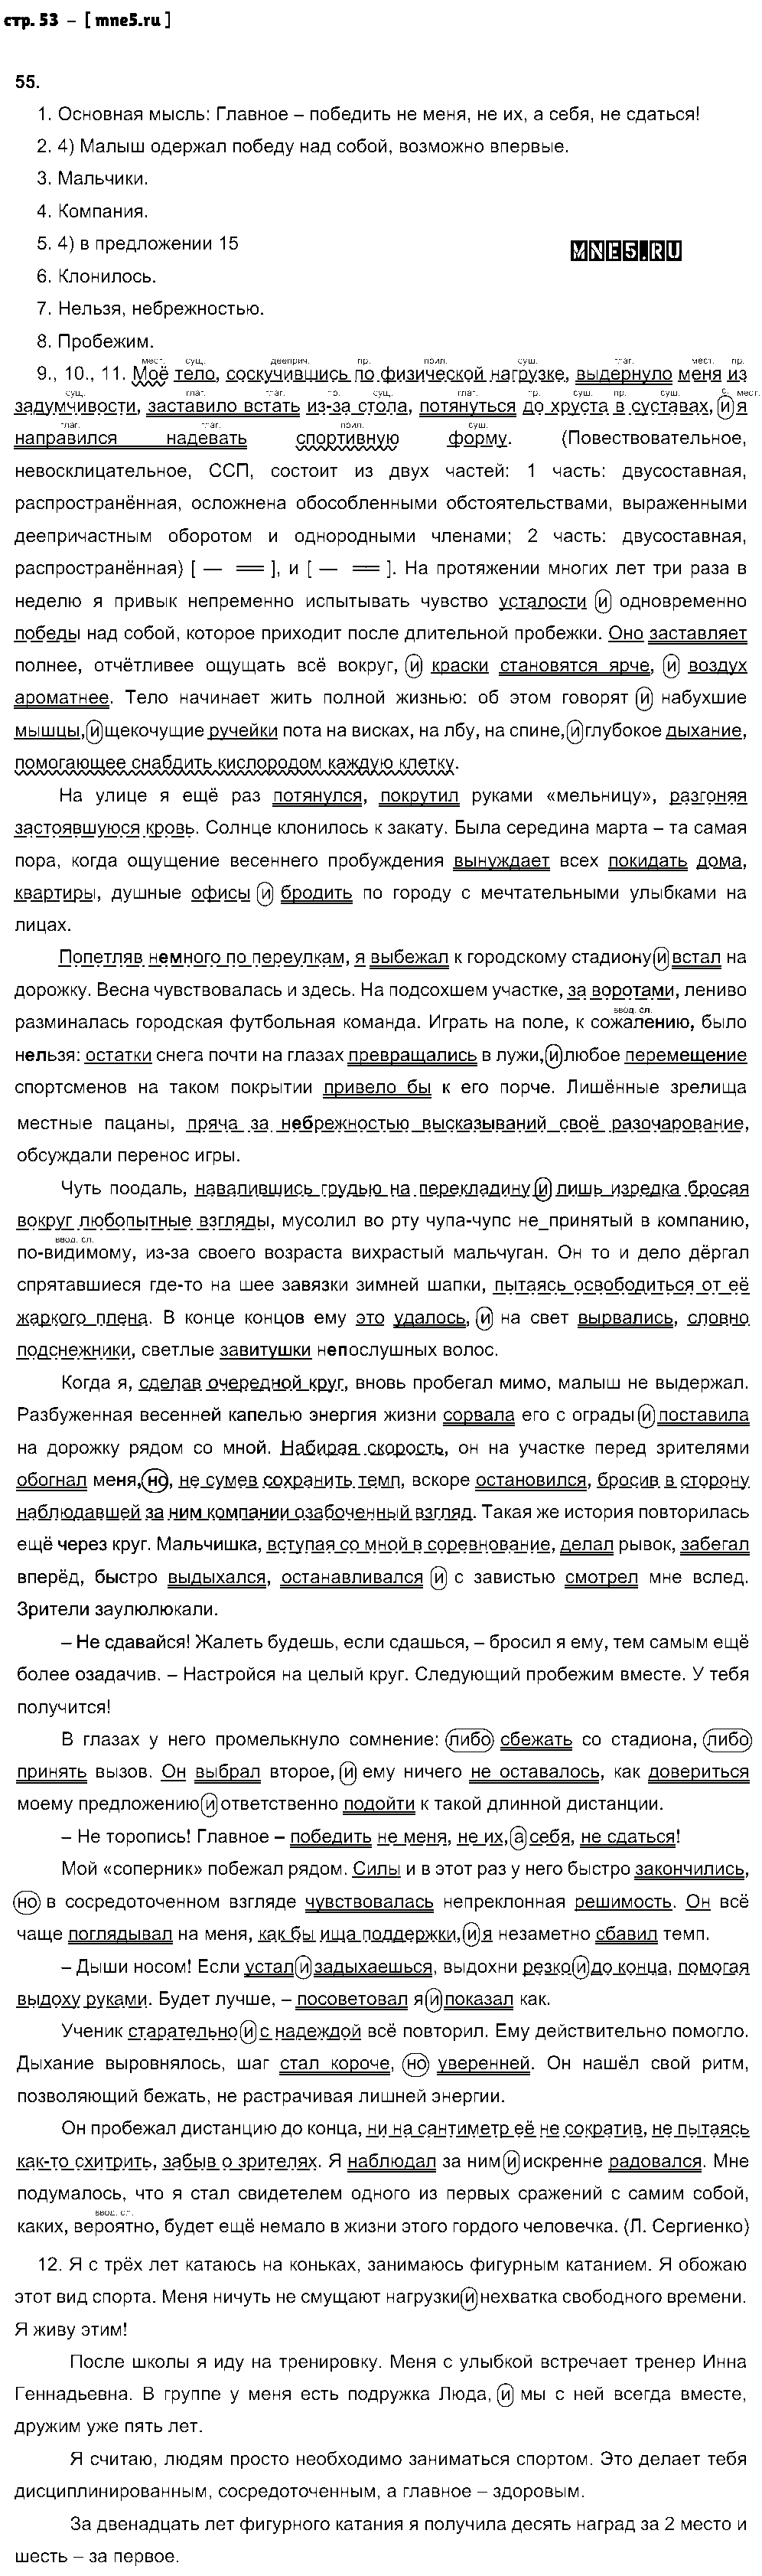 ГДЗ Русский язык 9 класс - стр. 53